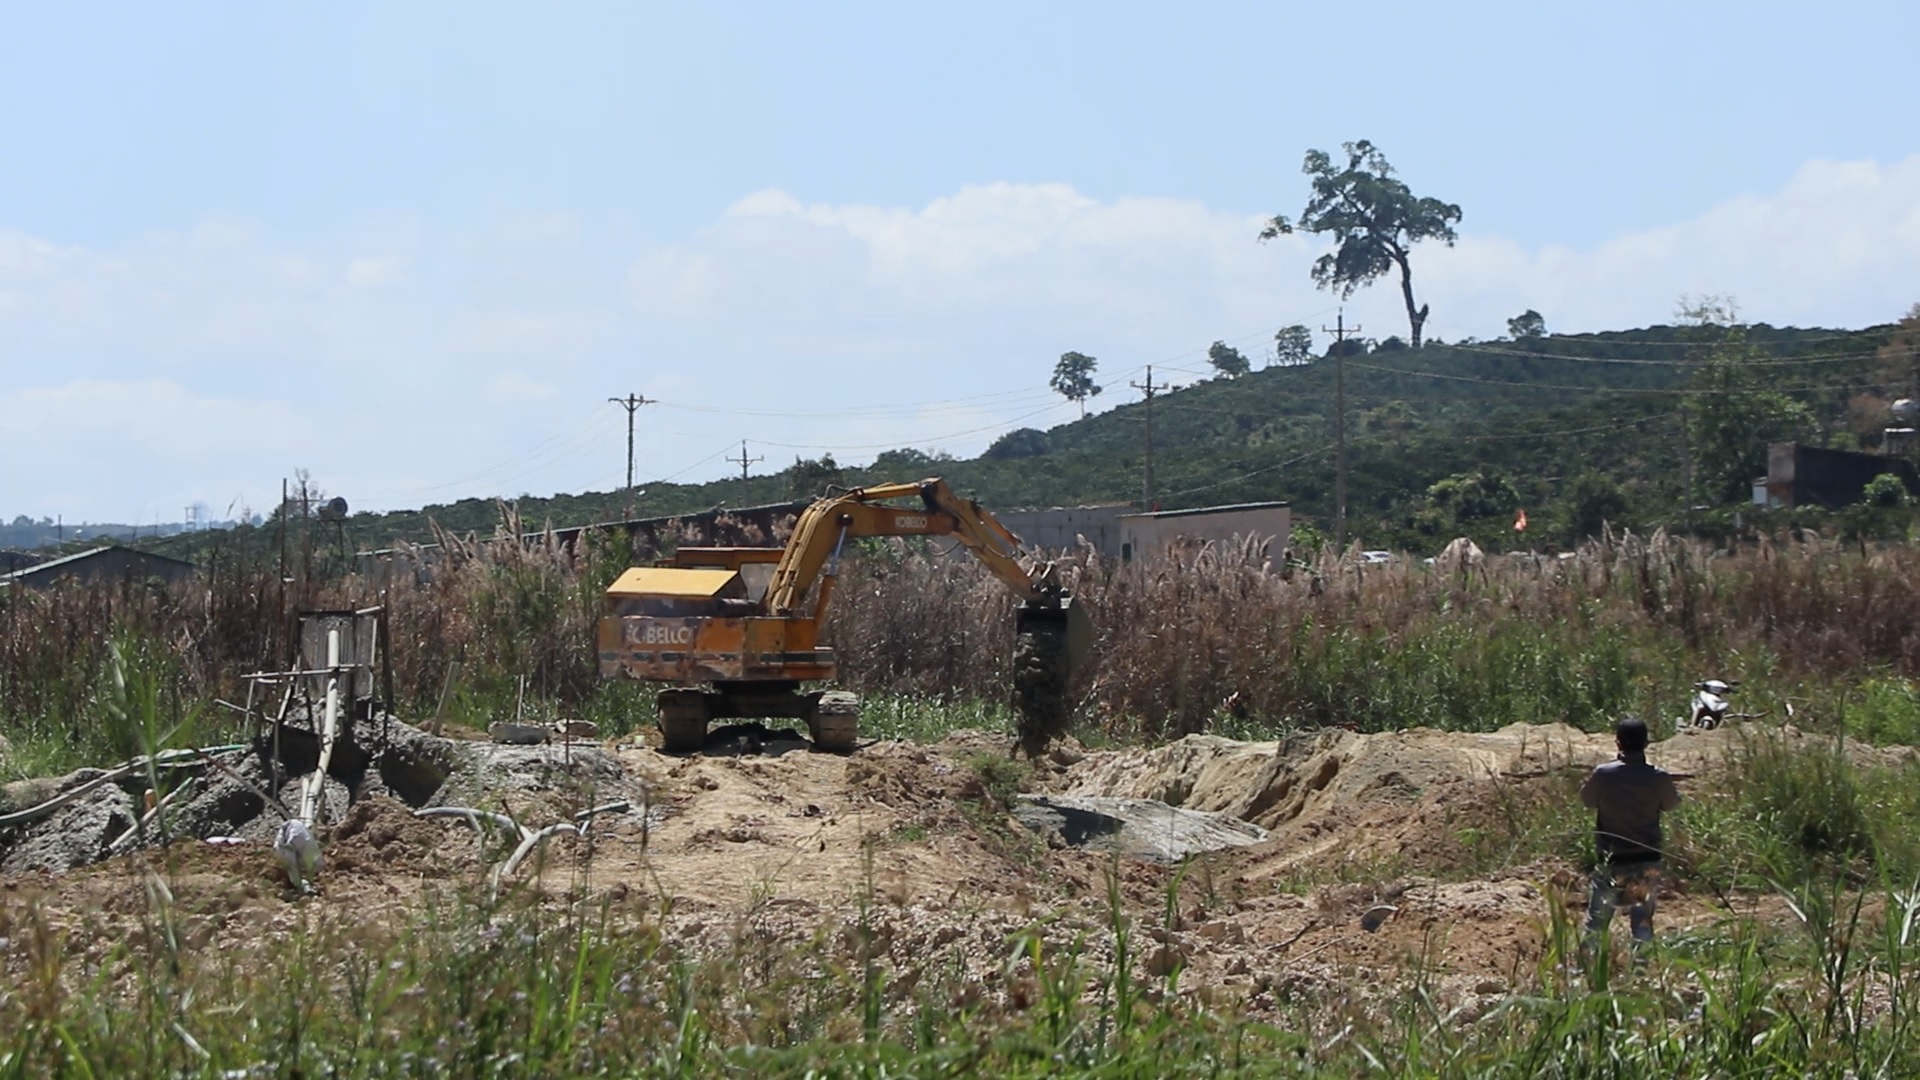 Vi phạm trong lĩnh vực khoáng sản, đất đai, Công ty Hiệp Hưng bị phạt gần 400 triệu đồng